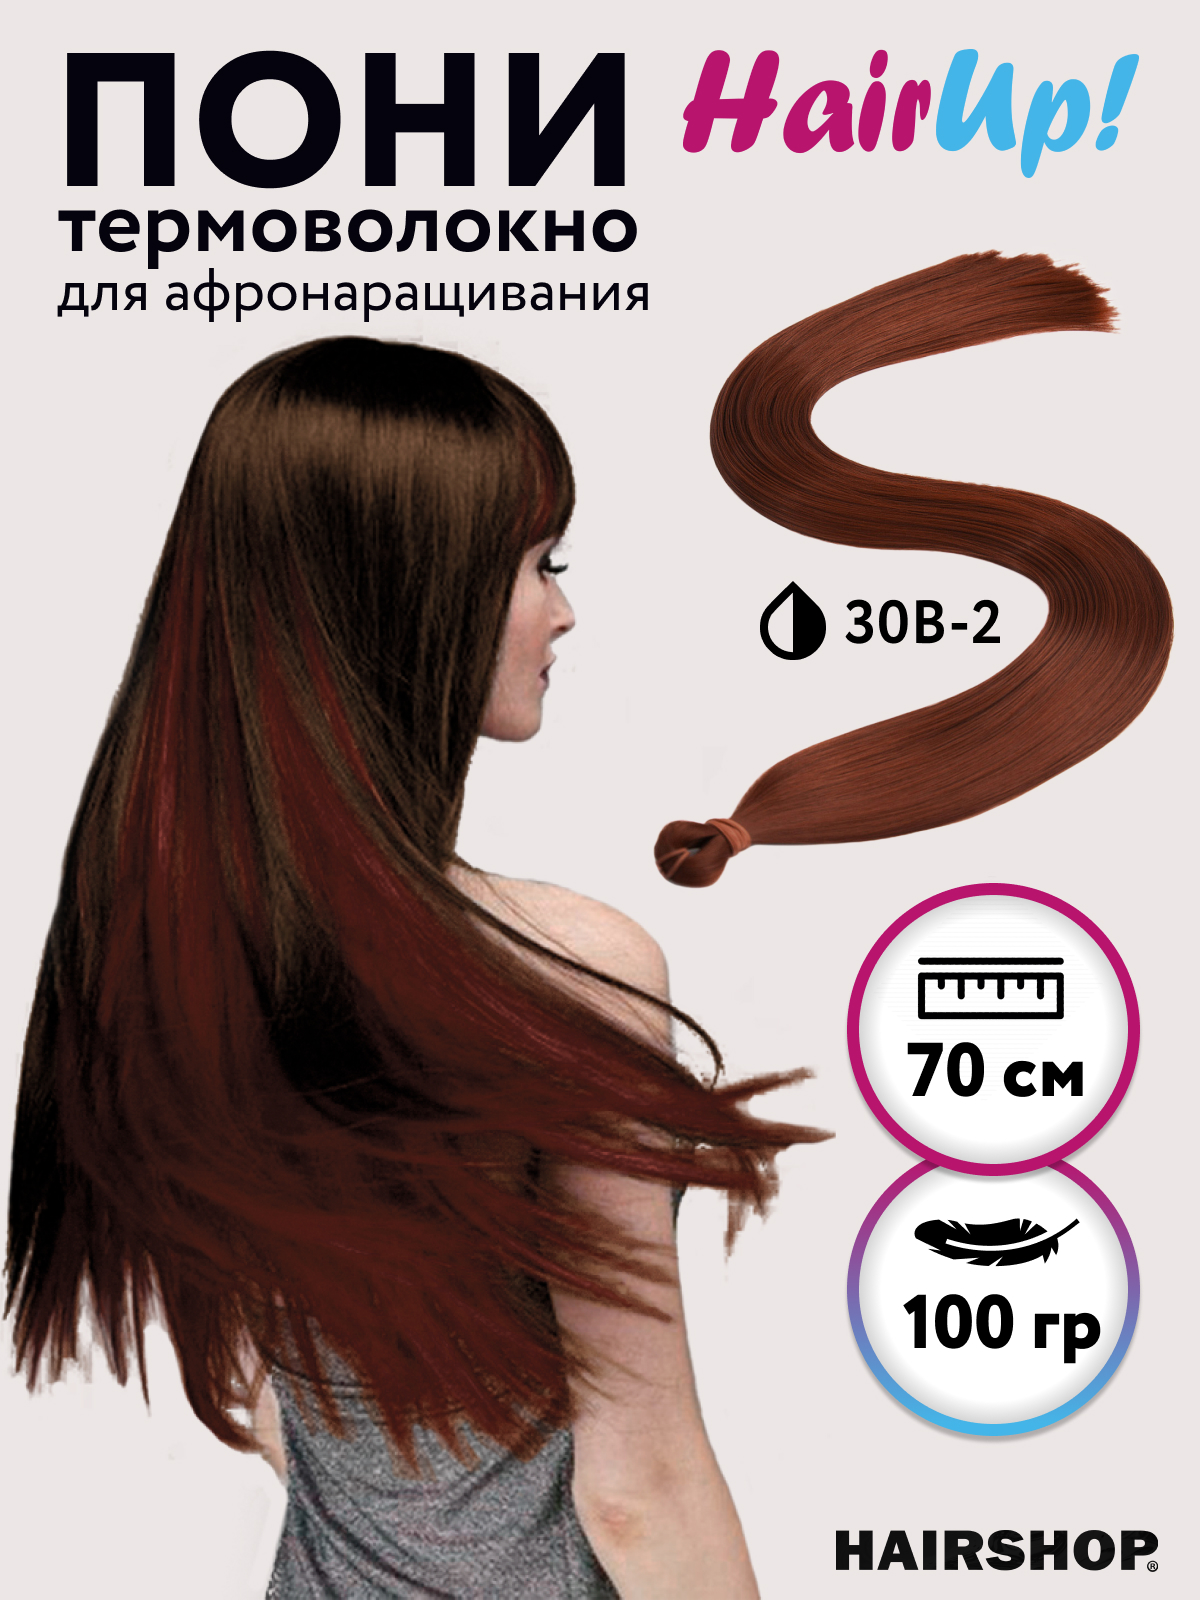 Канекалон Hairshop Пони HairUp для точечного афронаращивания прямые 30B-2 1,4м 100г милый пони